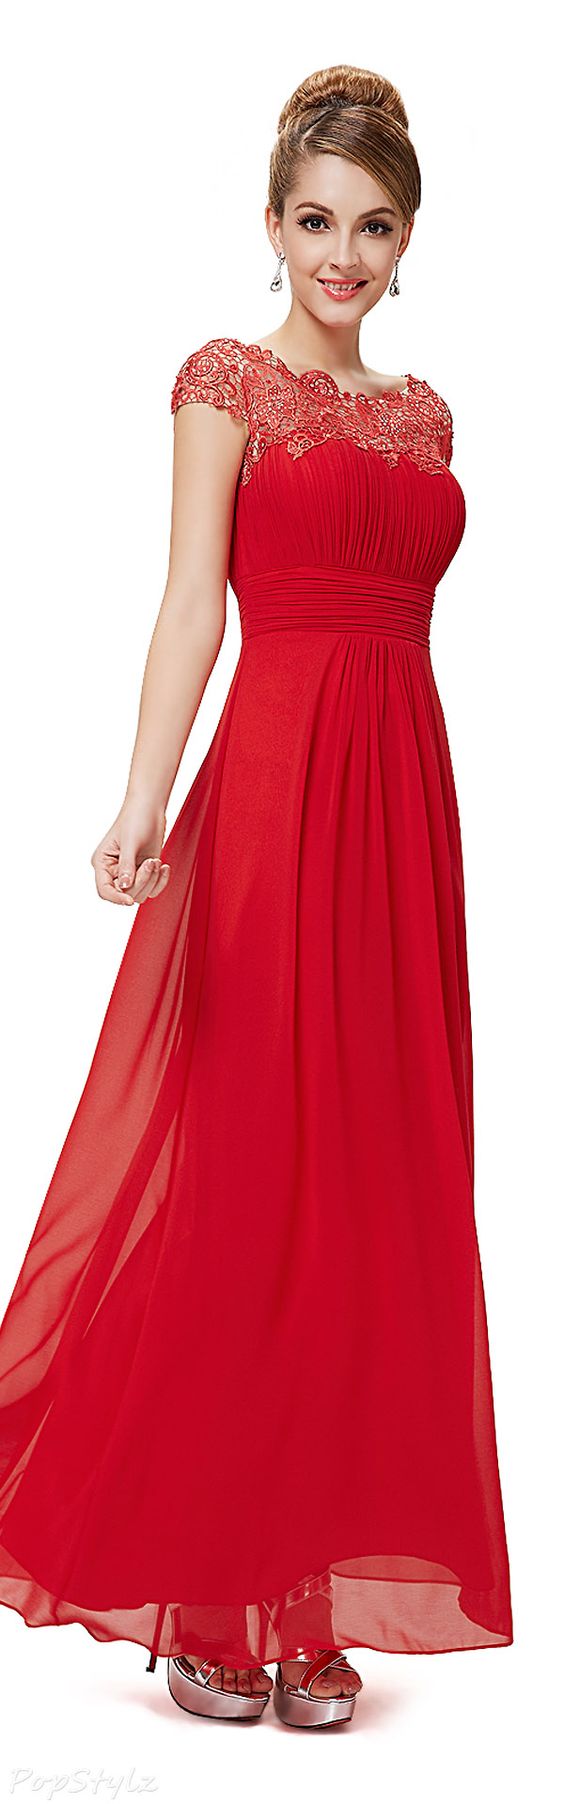 Đầm dạ hội màu đỏ